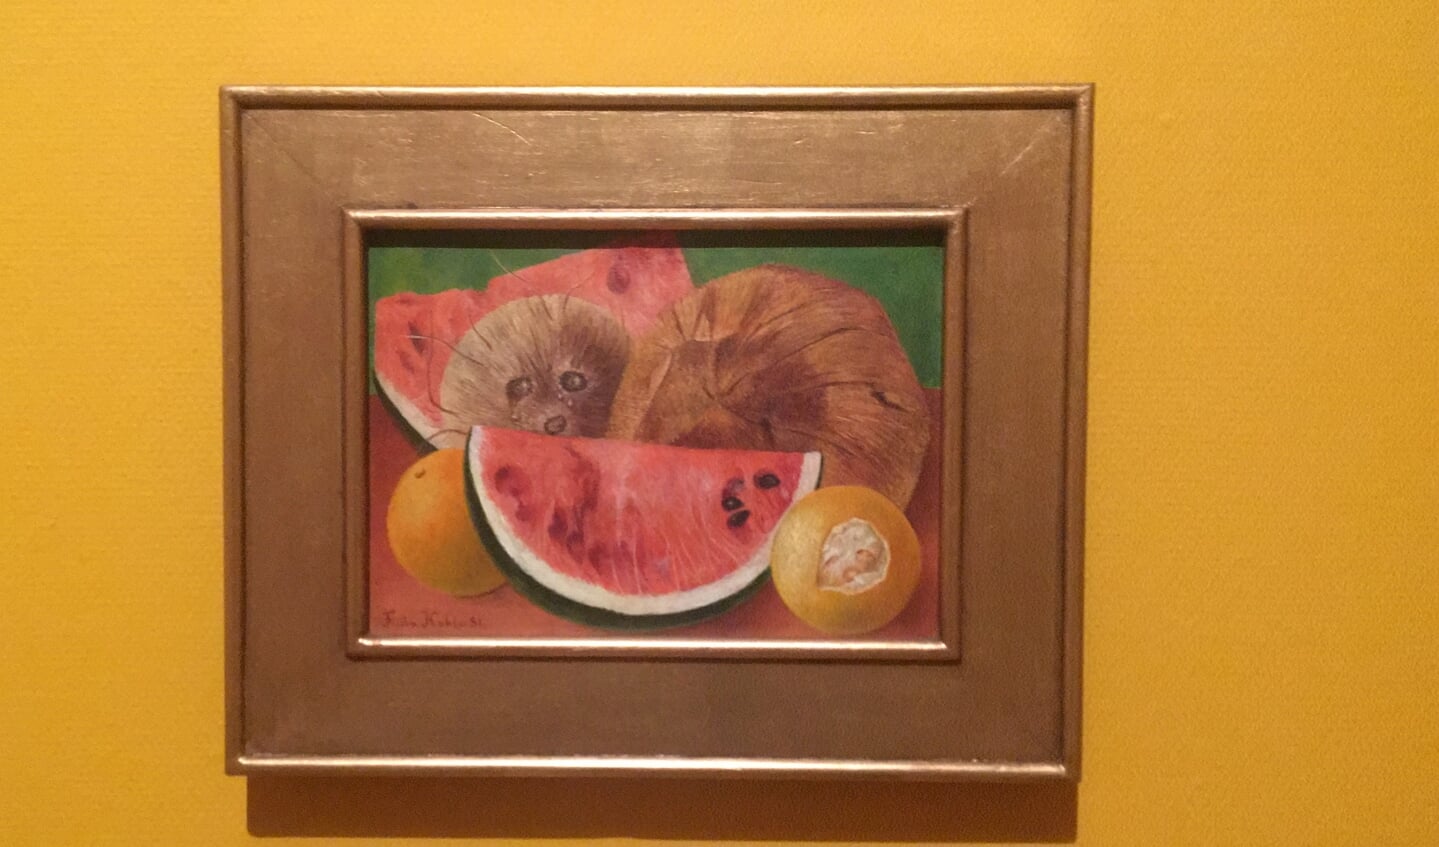 Werk van Frida Kahlo dat nu in het Cobra Museum te zien is.